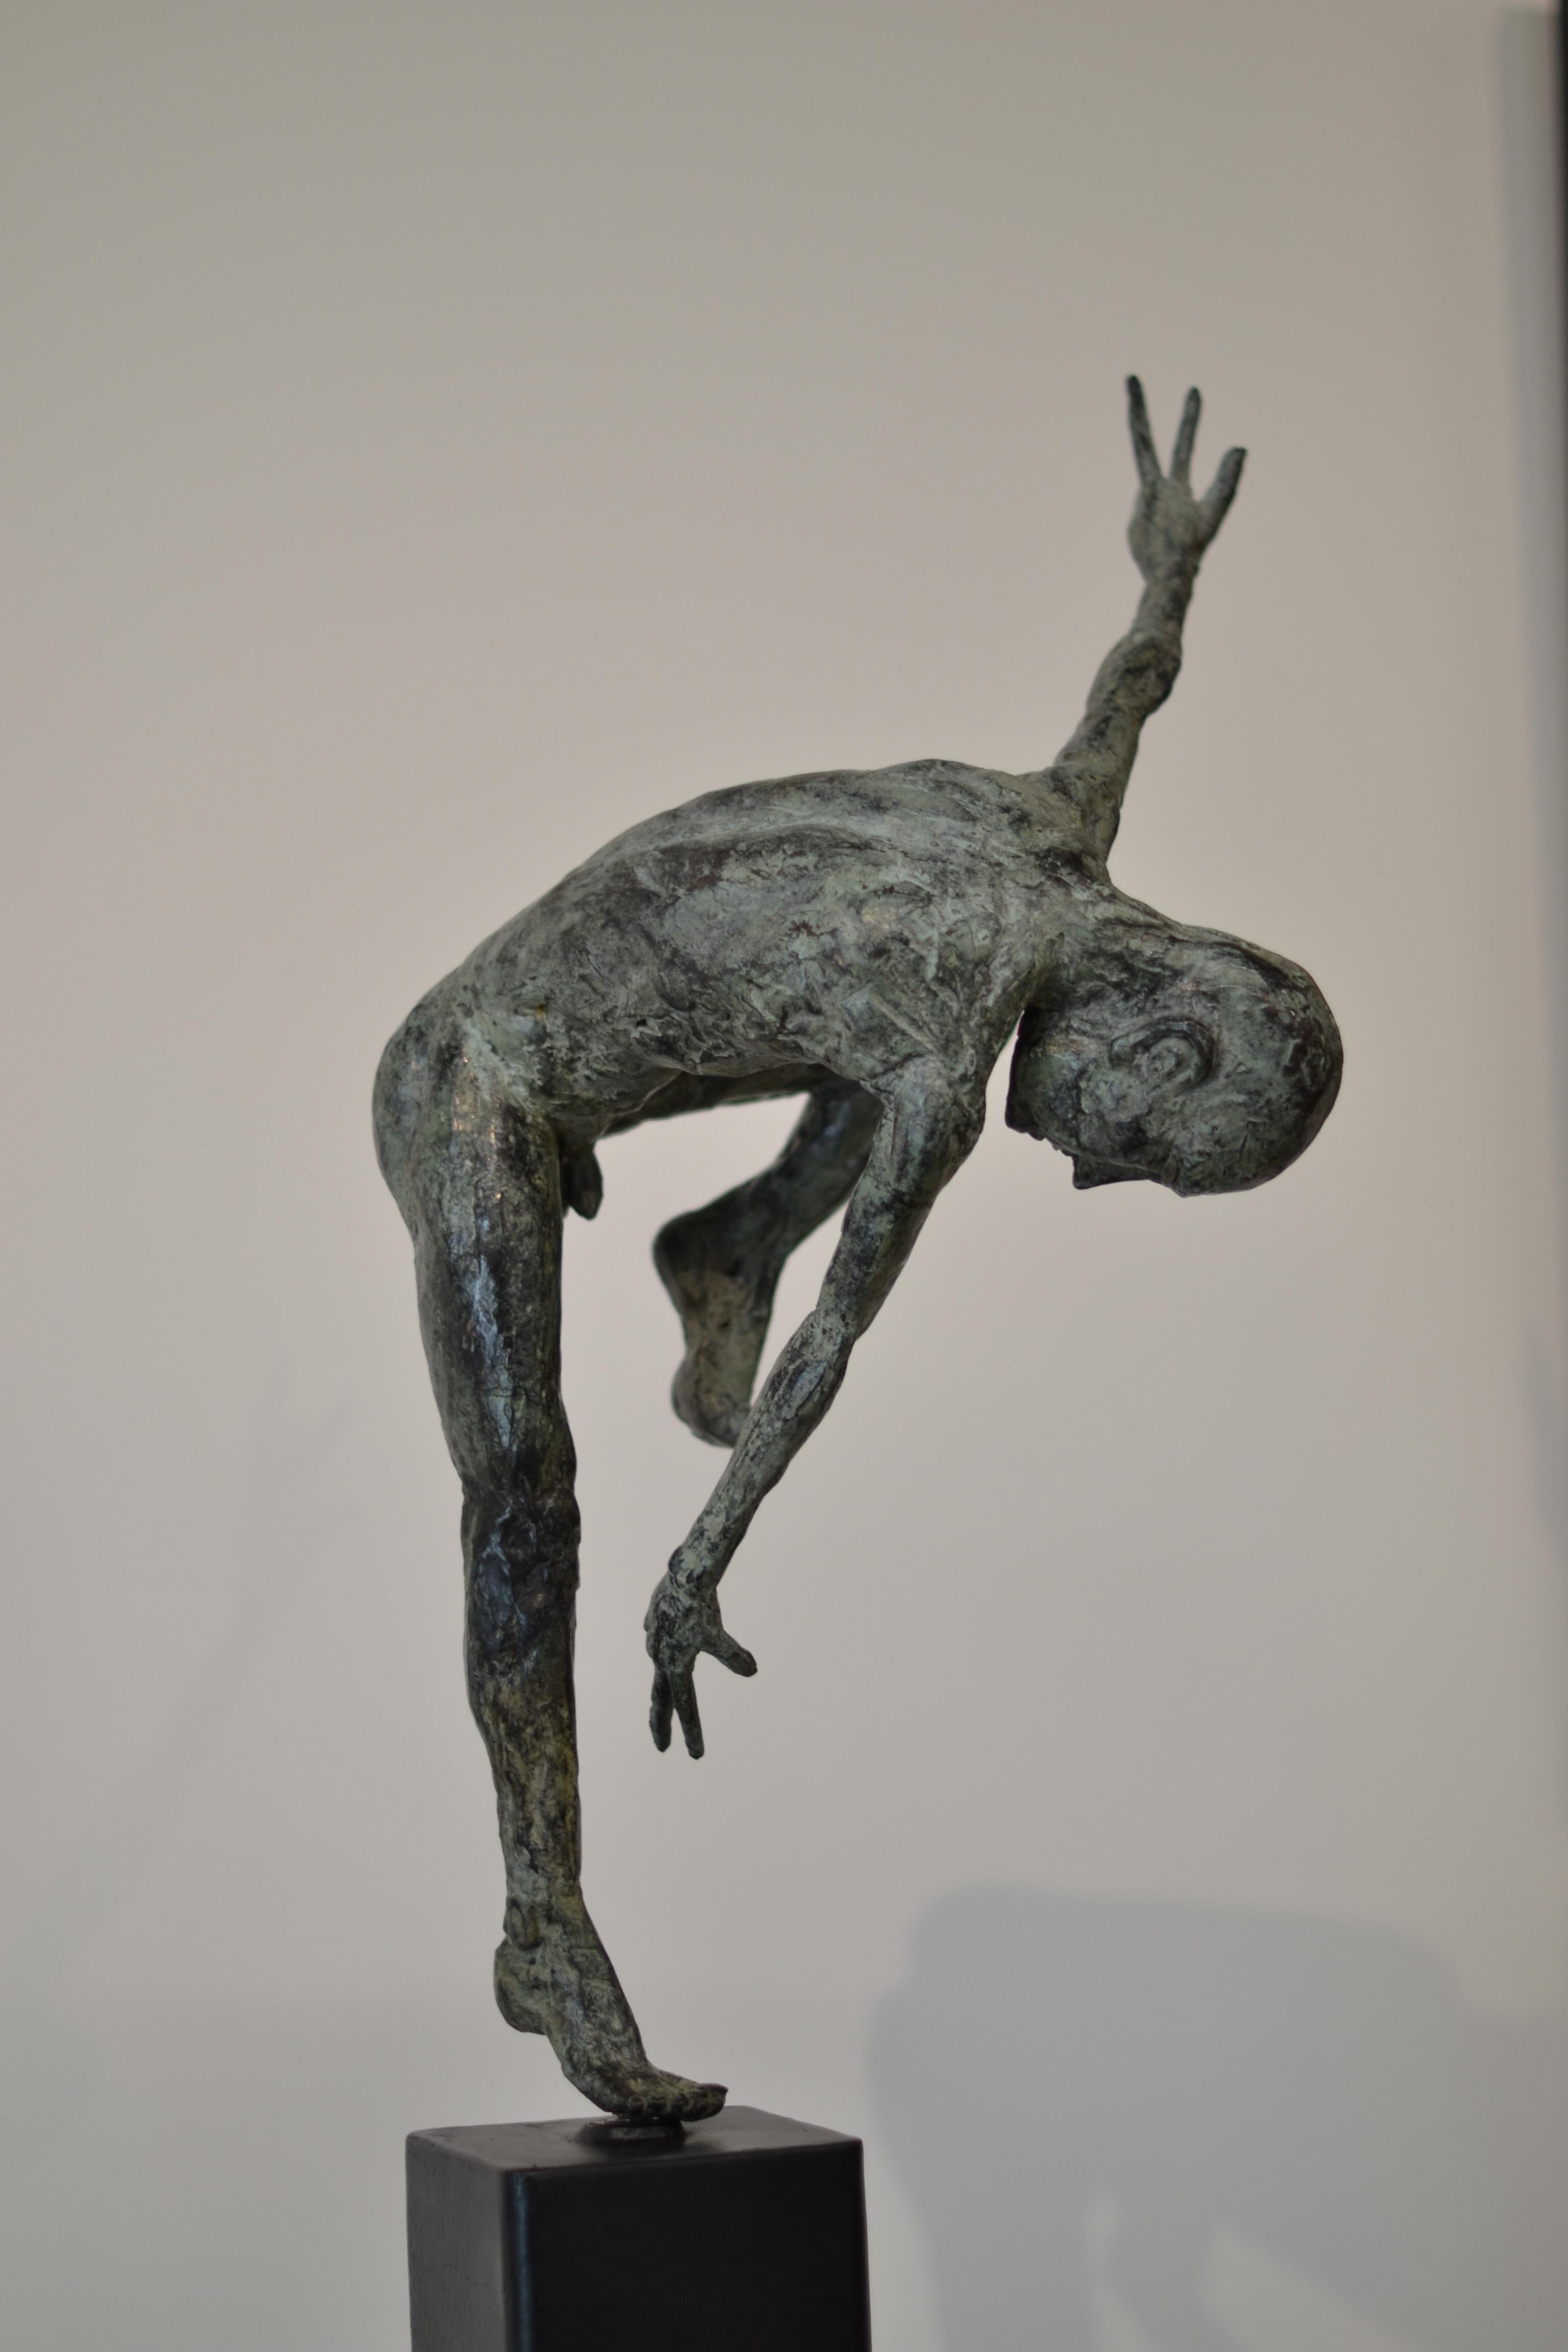 Dancer Satier - Martijn Soontiens, 21st Century Contemporary Sculpture For Sale 2